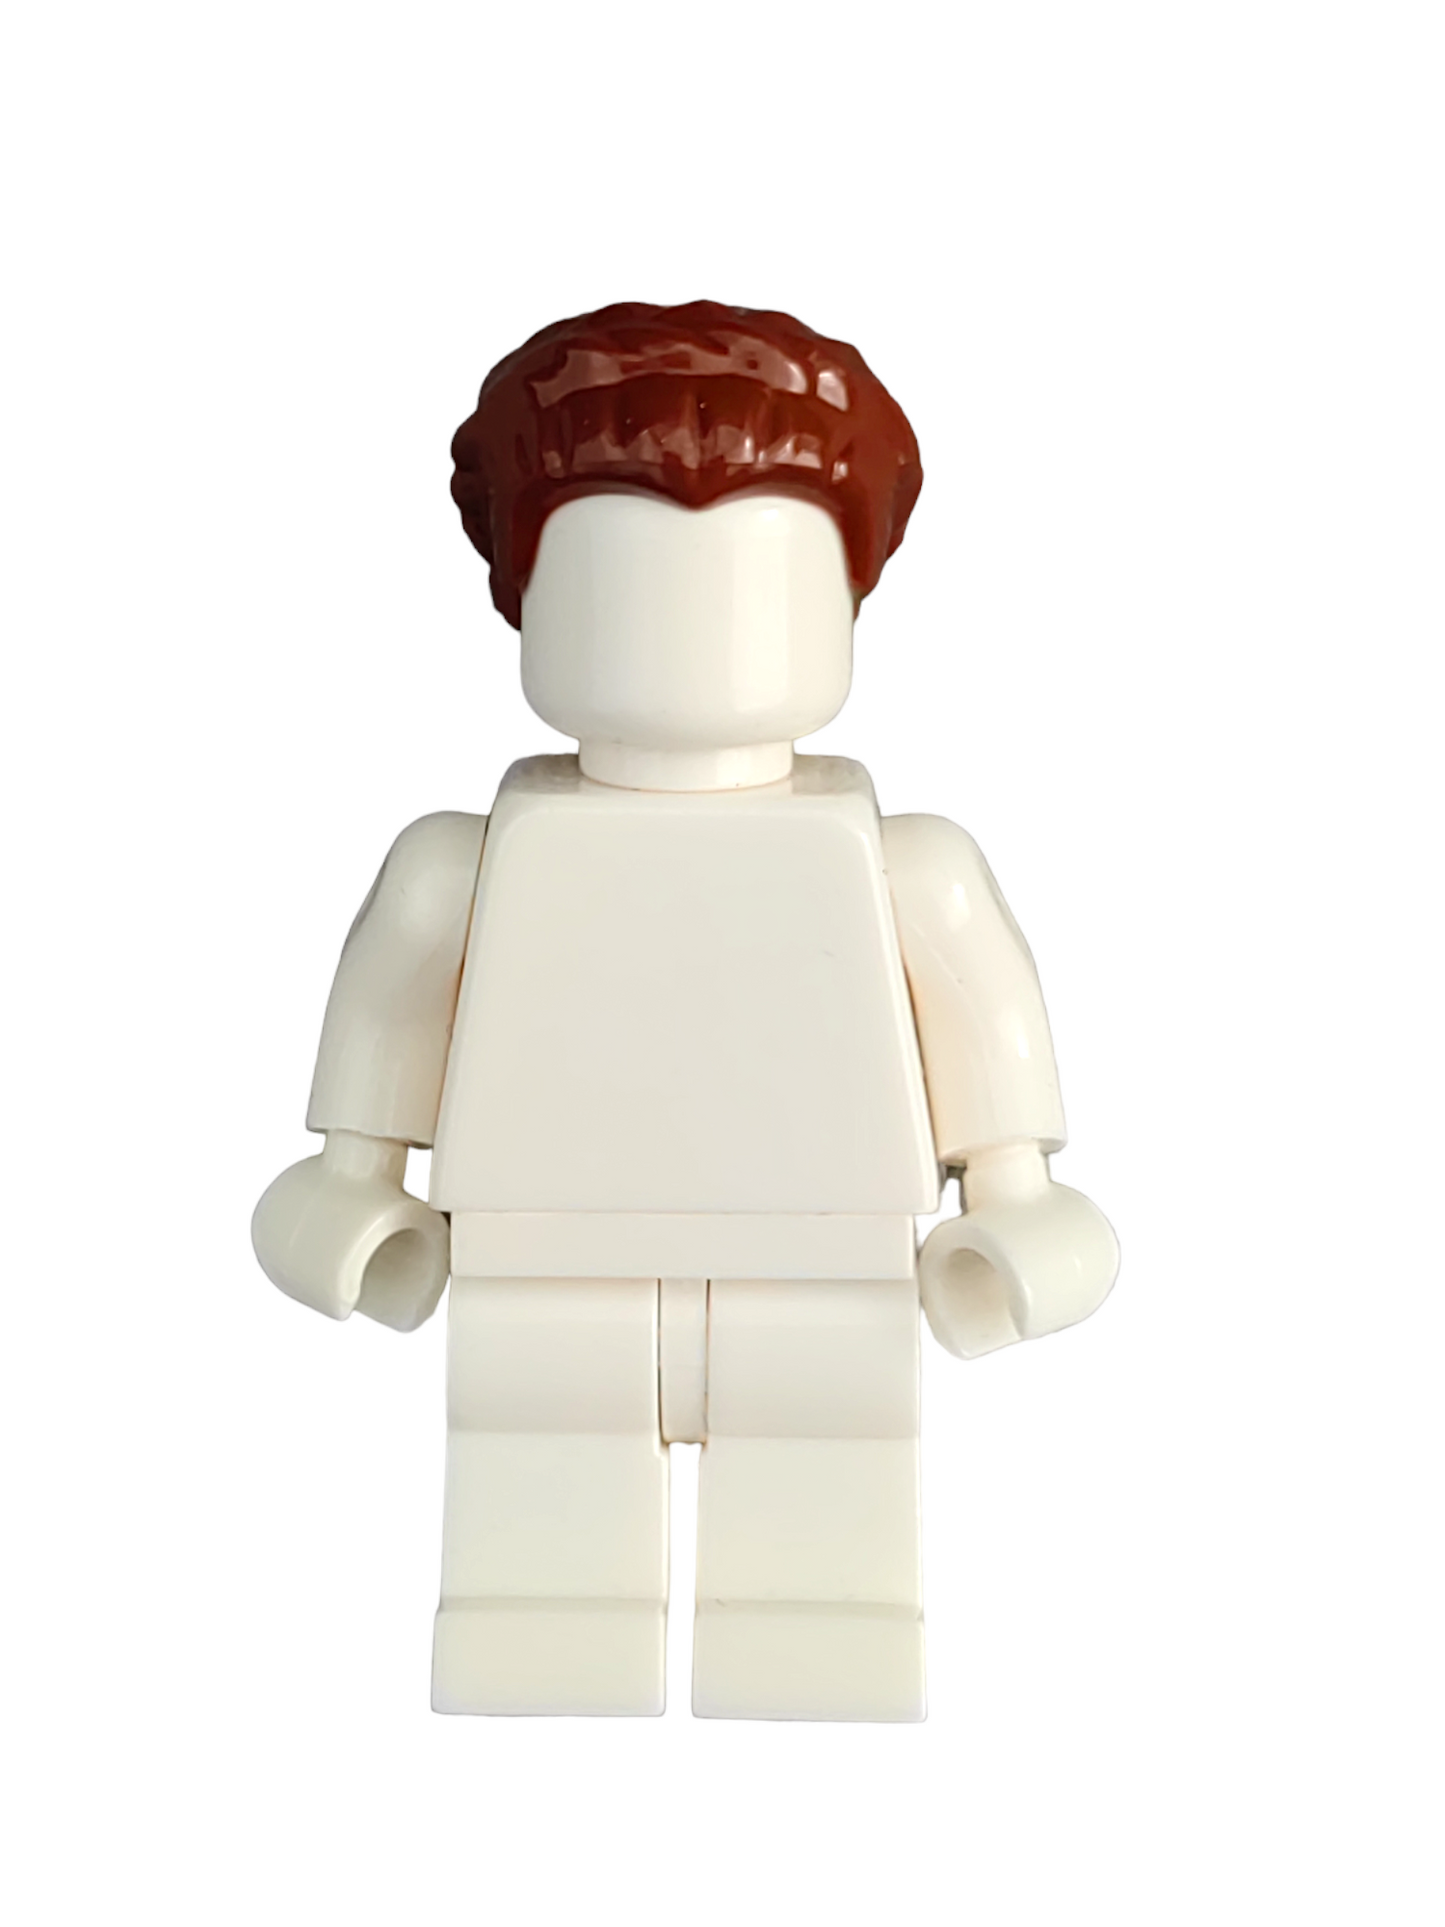 LEGO Wig, Brown Hair Short, Braided on Sides - UB1354